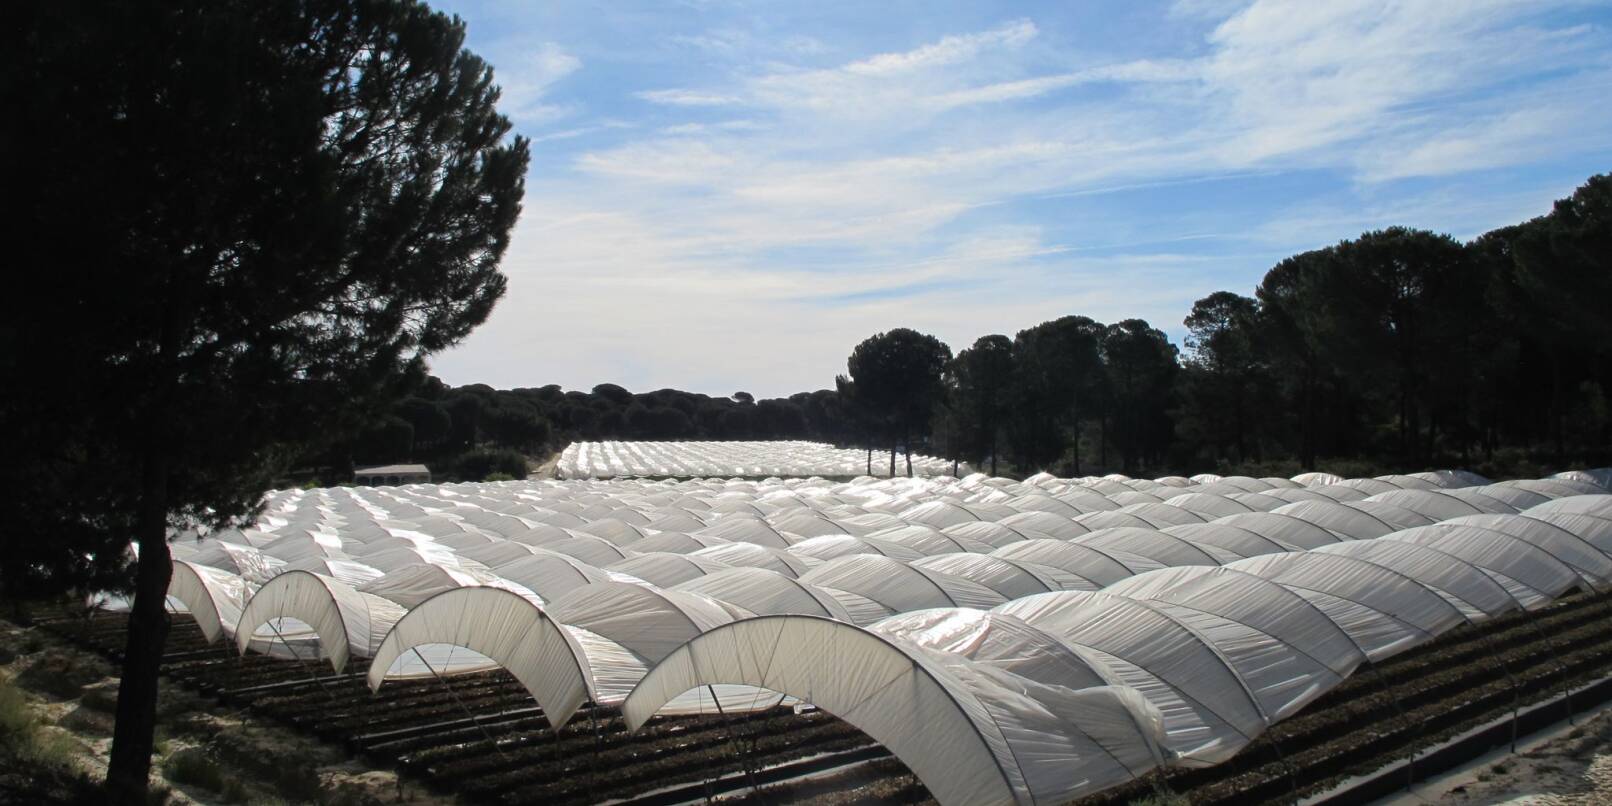 Die Beerenfelder rund um den Nationalpark Doñana werden in großen, von Plastikfolie überzogenen Tunneln angebaut.